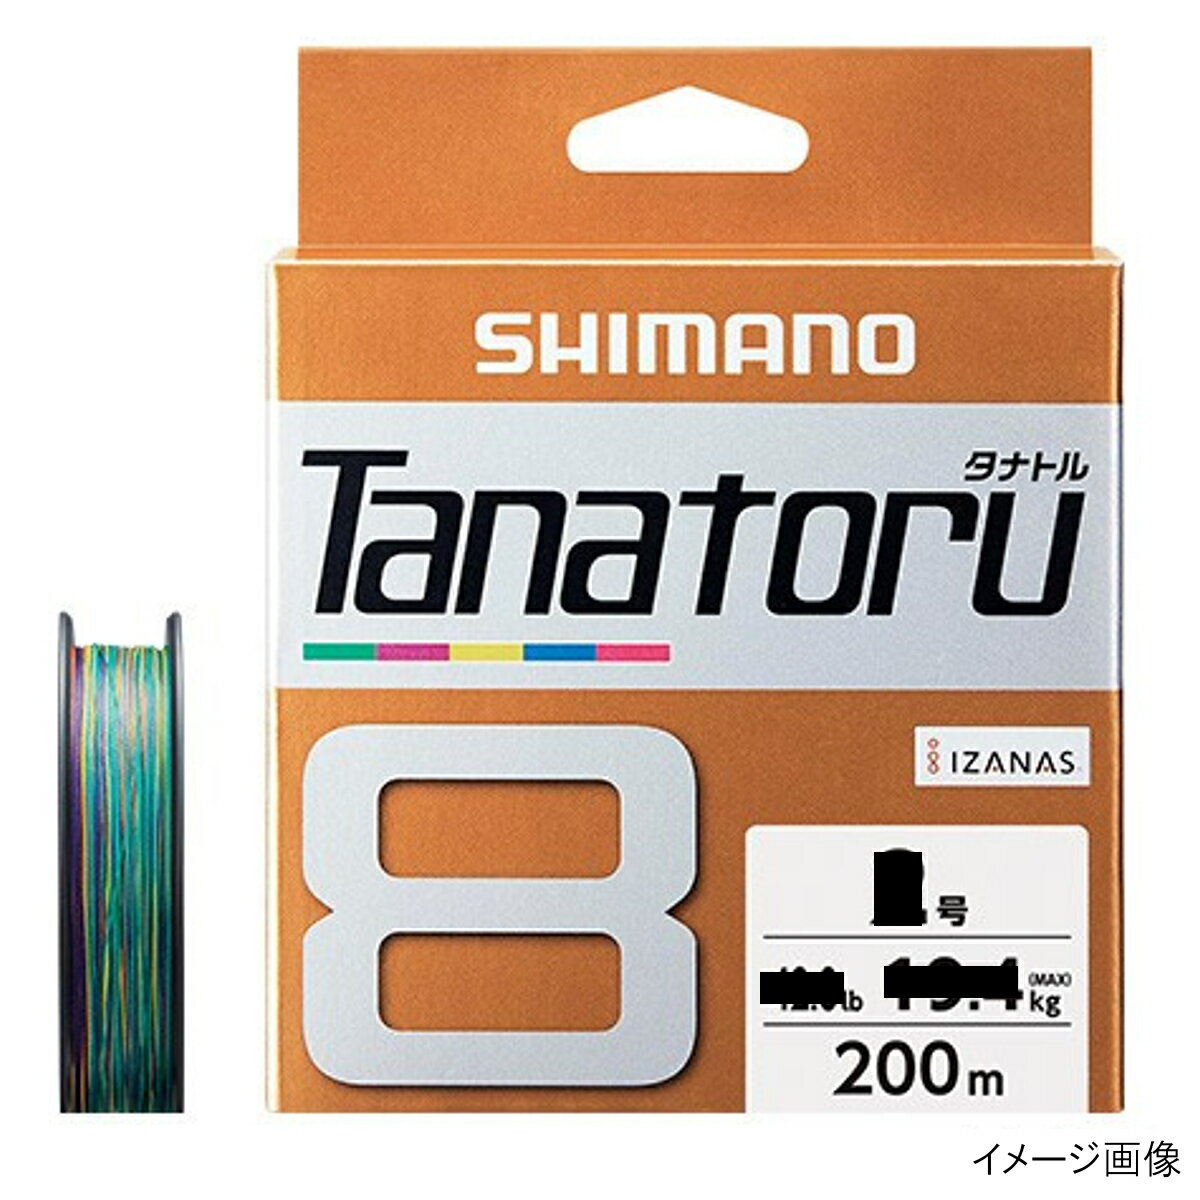 シマノ タナトル8 PLF68R 200m 3号